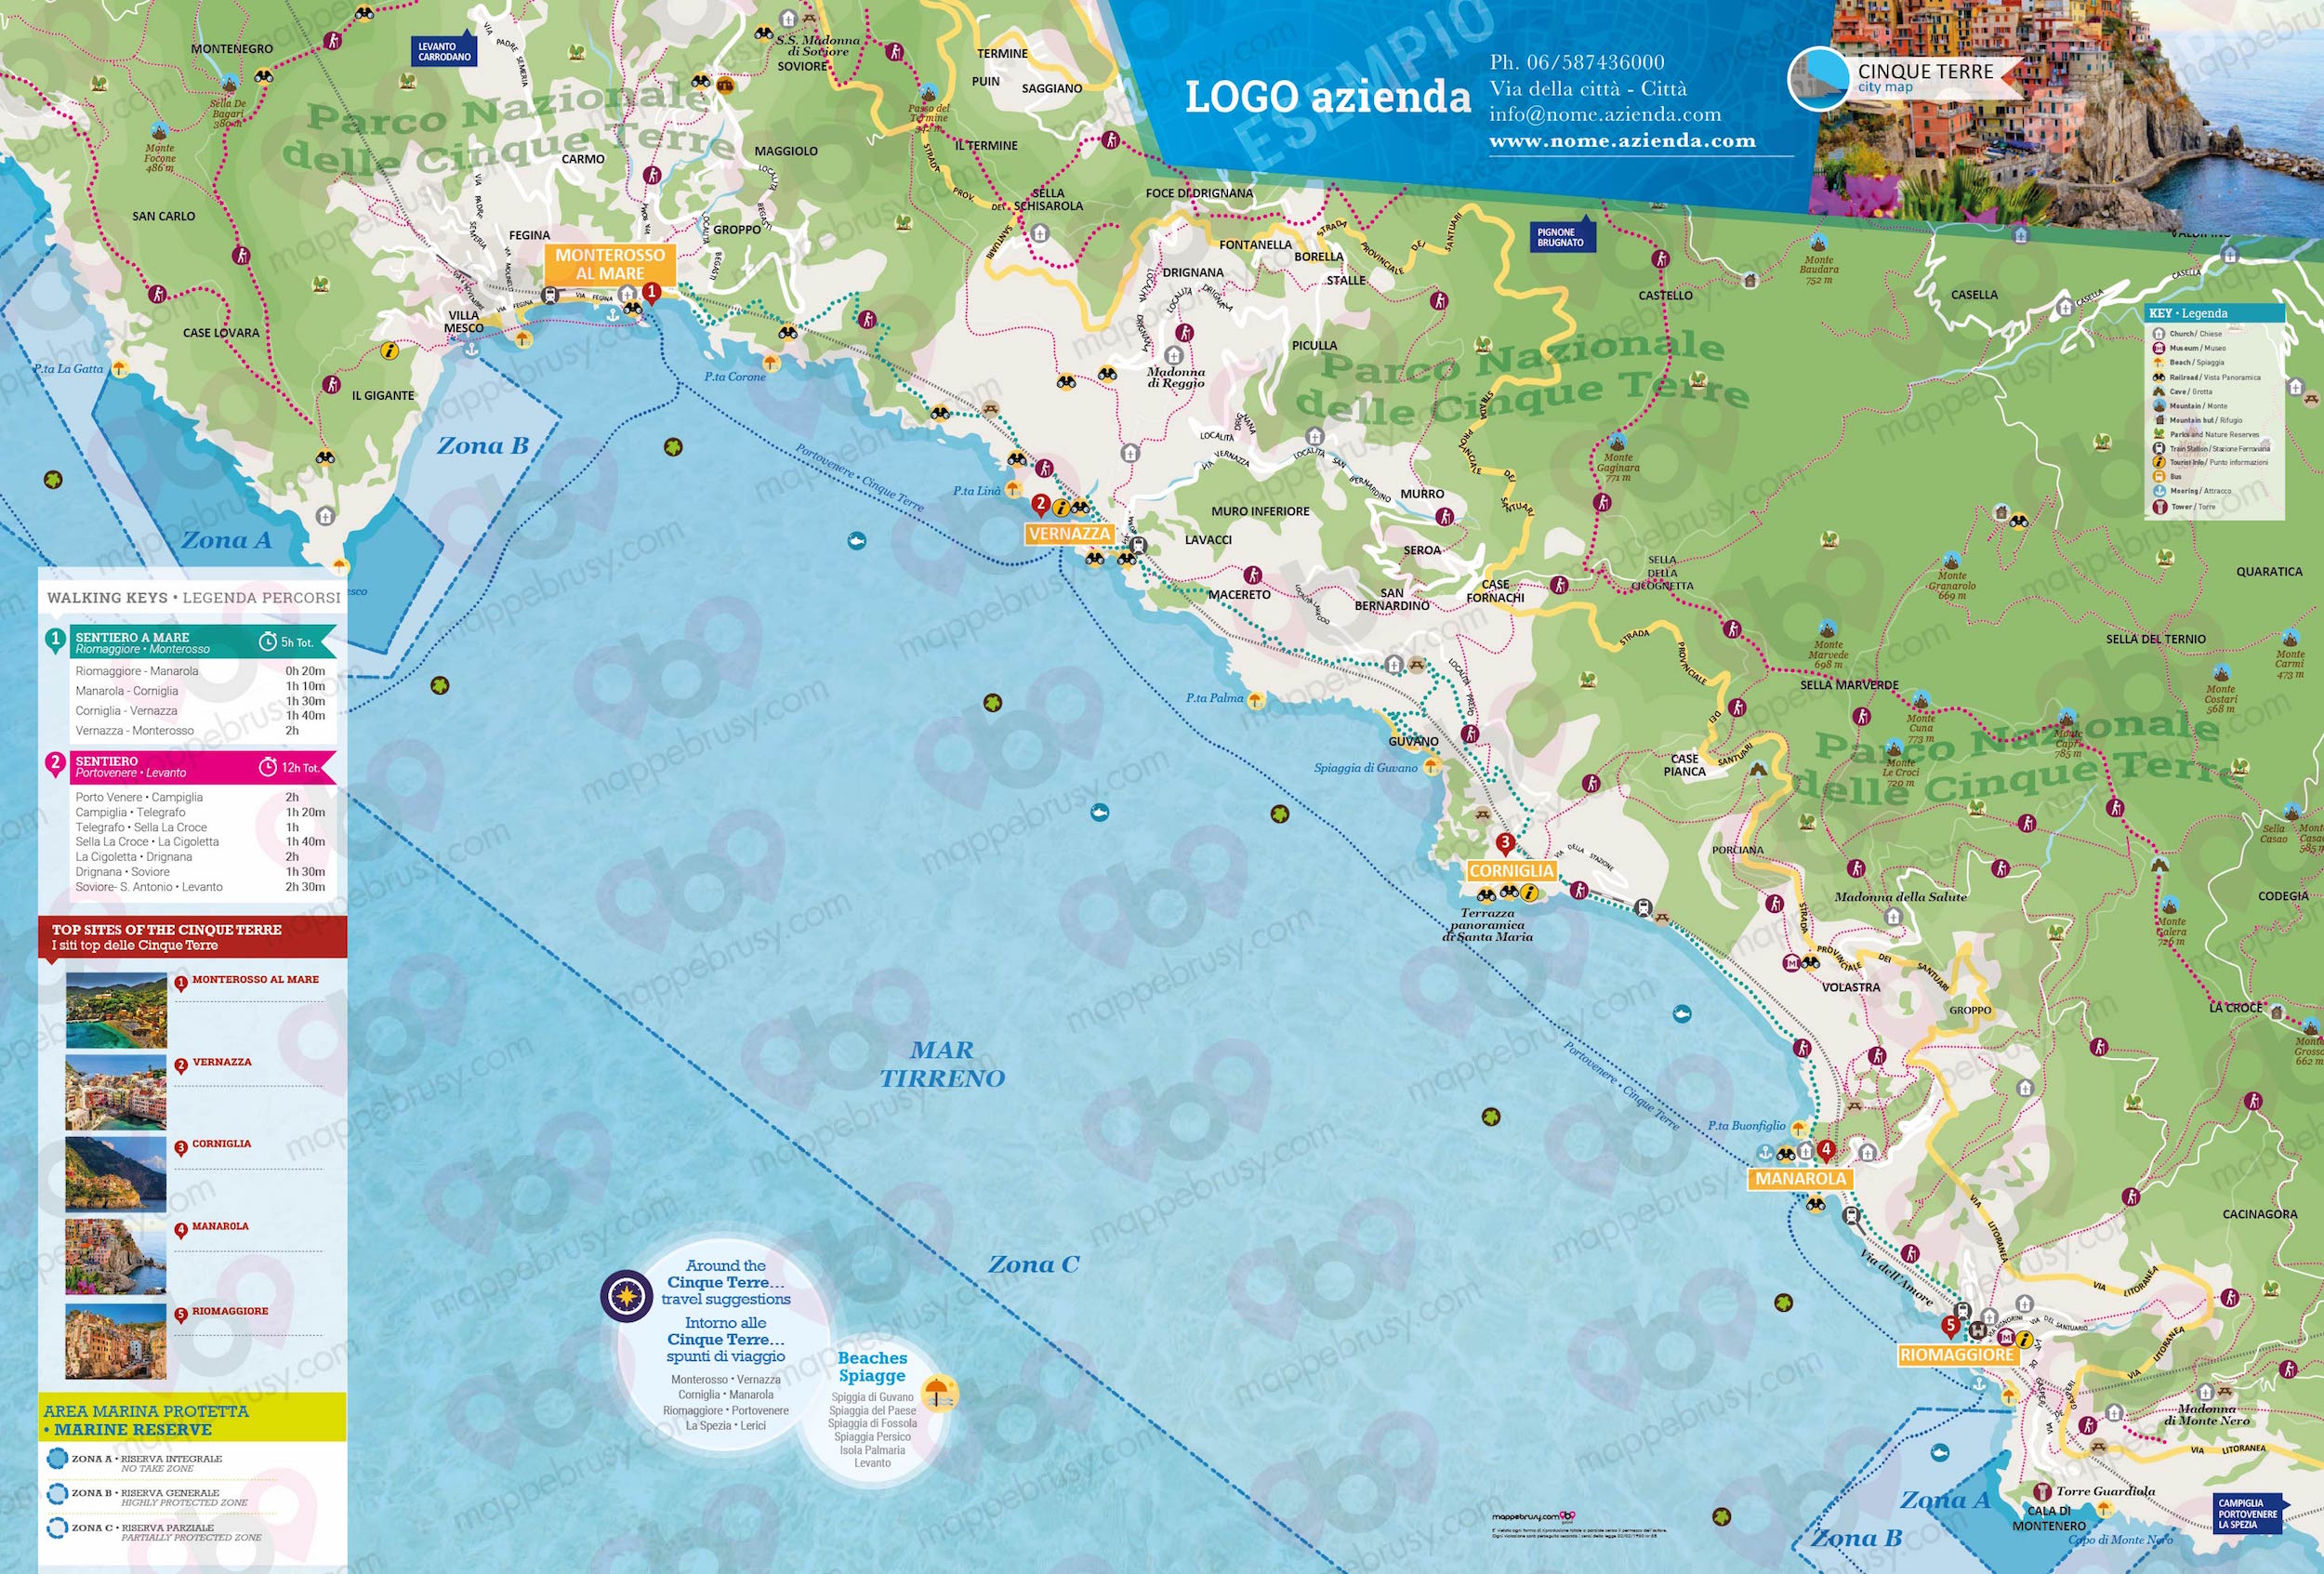 Mappa delle Cinque Terre - Cinque Terre city map - mappa delle Cinque Terre - mappa personalizzata delle Cinque Terre